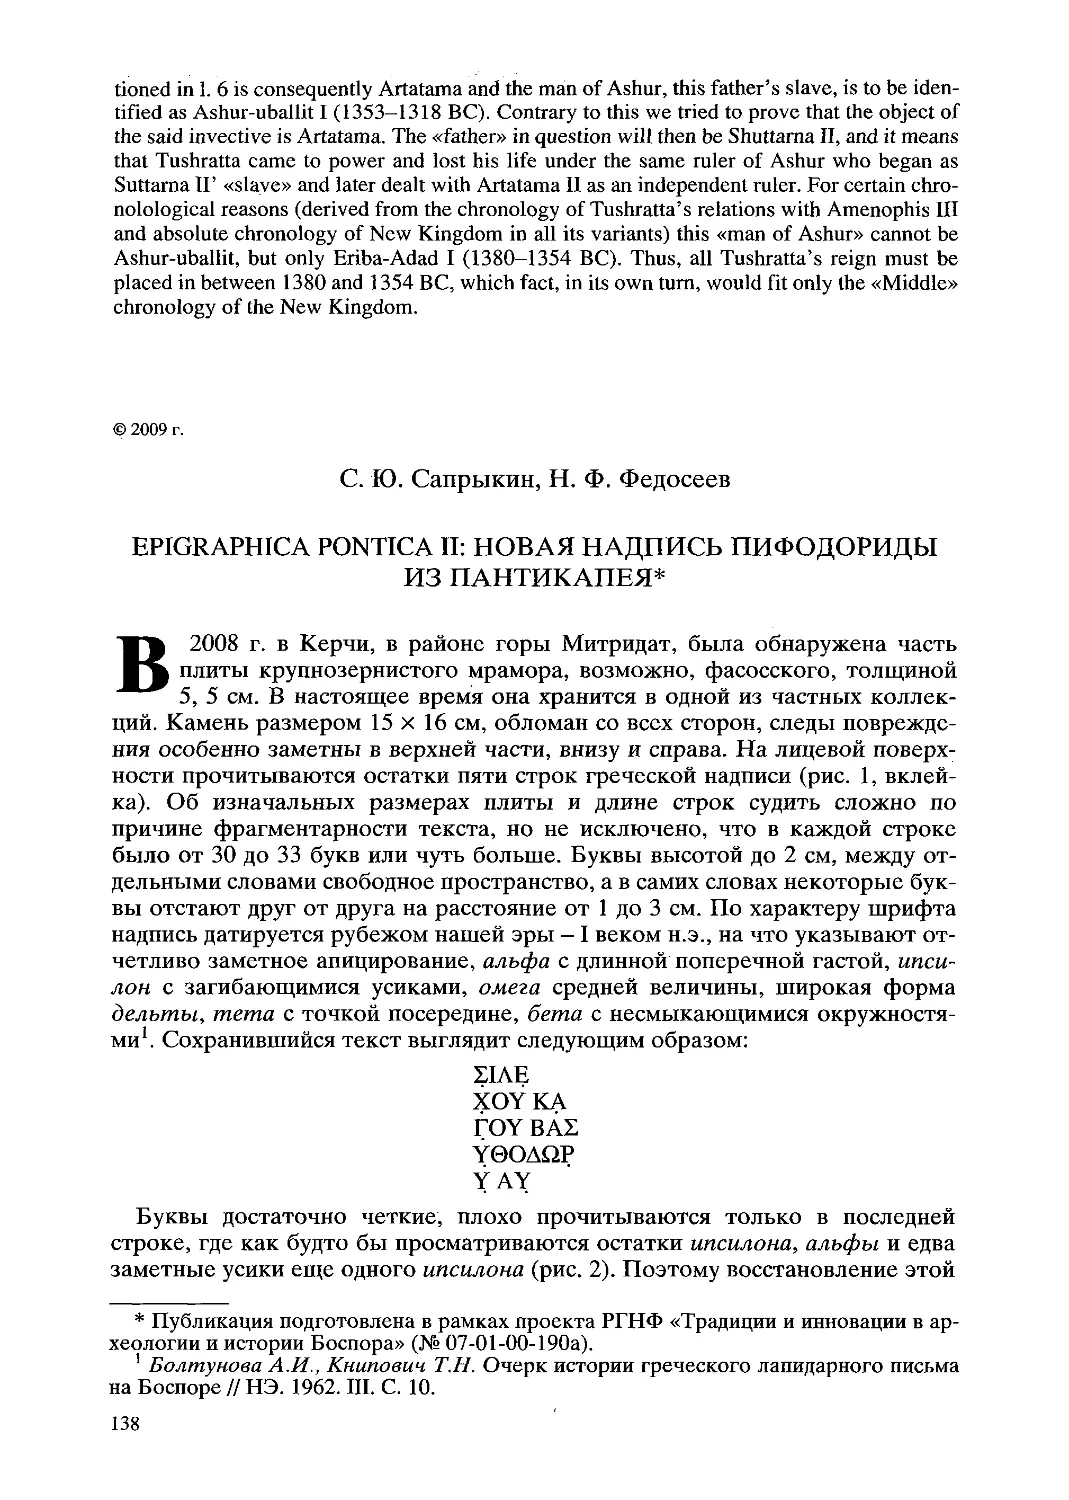 ﻿Epigraphica Pontica II: новая надпись Пифодориды из Пантикапея. С. Ю. Сапрыкин, Н. Ф. Федосее